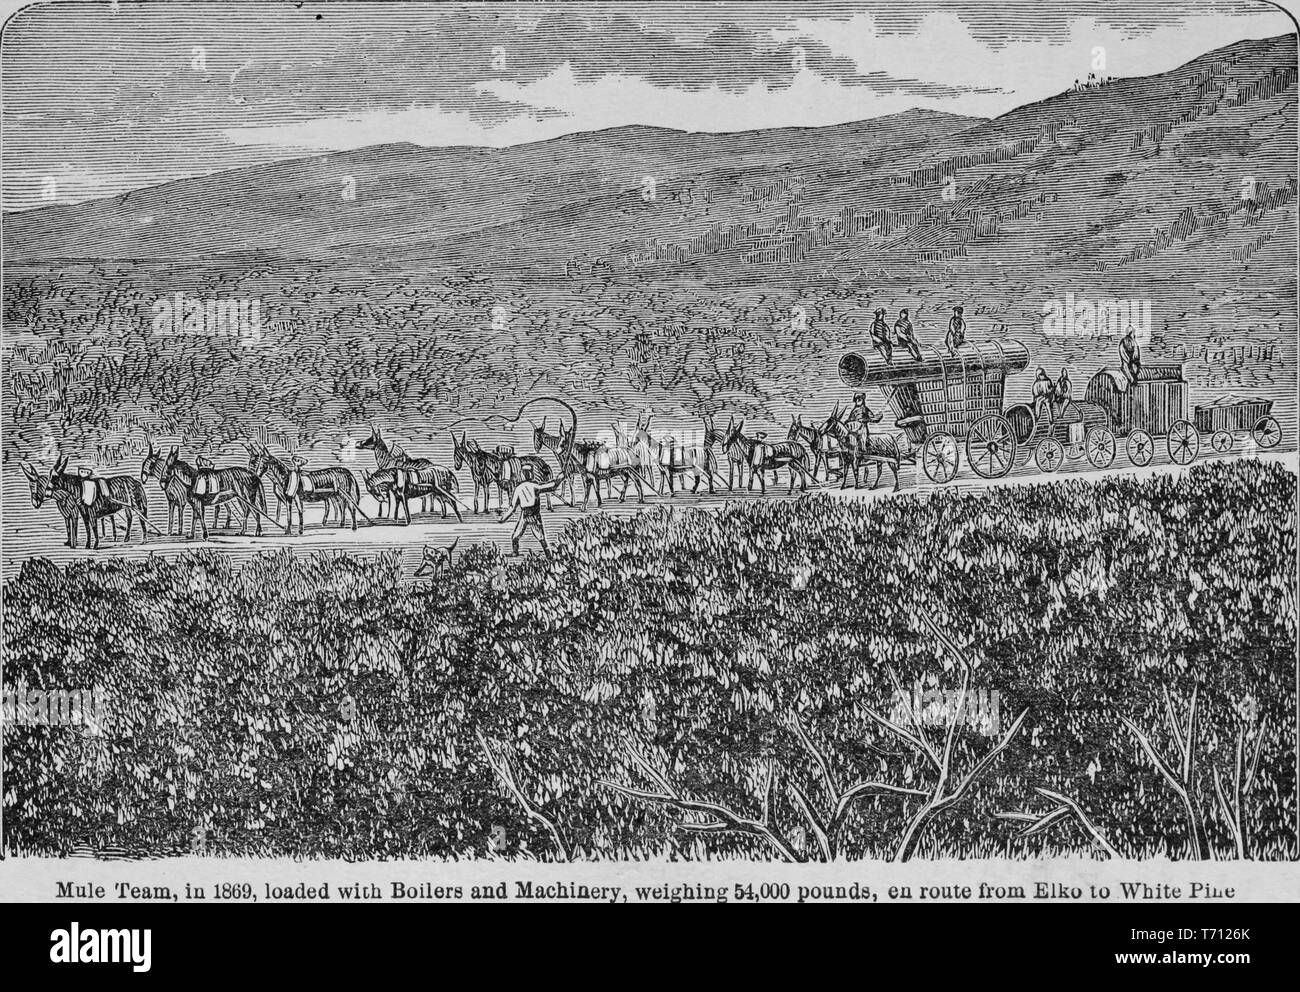 Incisione di un mulo team ha caricato con i macchinari di Antelope Valley, dal libro "Crofutt è di nuovo overland e turistiche della costa del Pacifico' guida, pino bianco County, Nevada, 1879. La cortesia Internet Archive. () Foto Stock